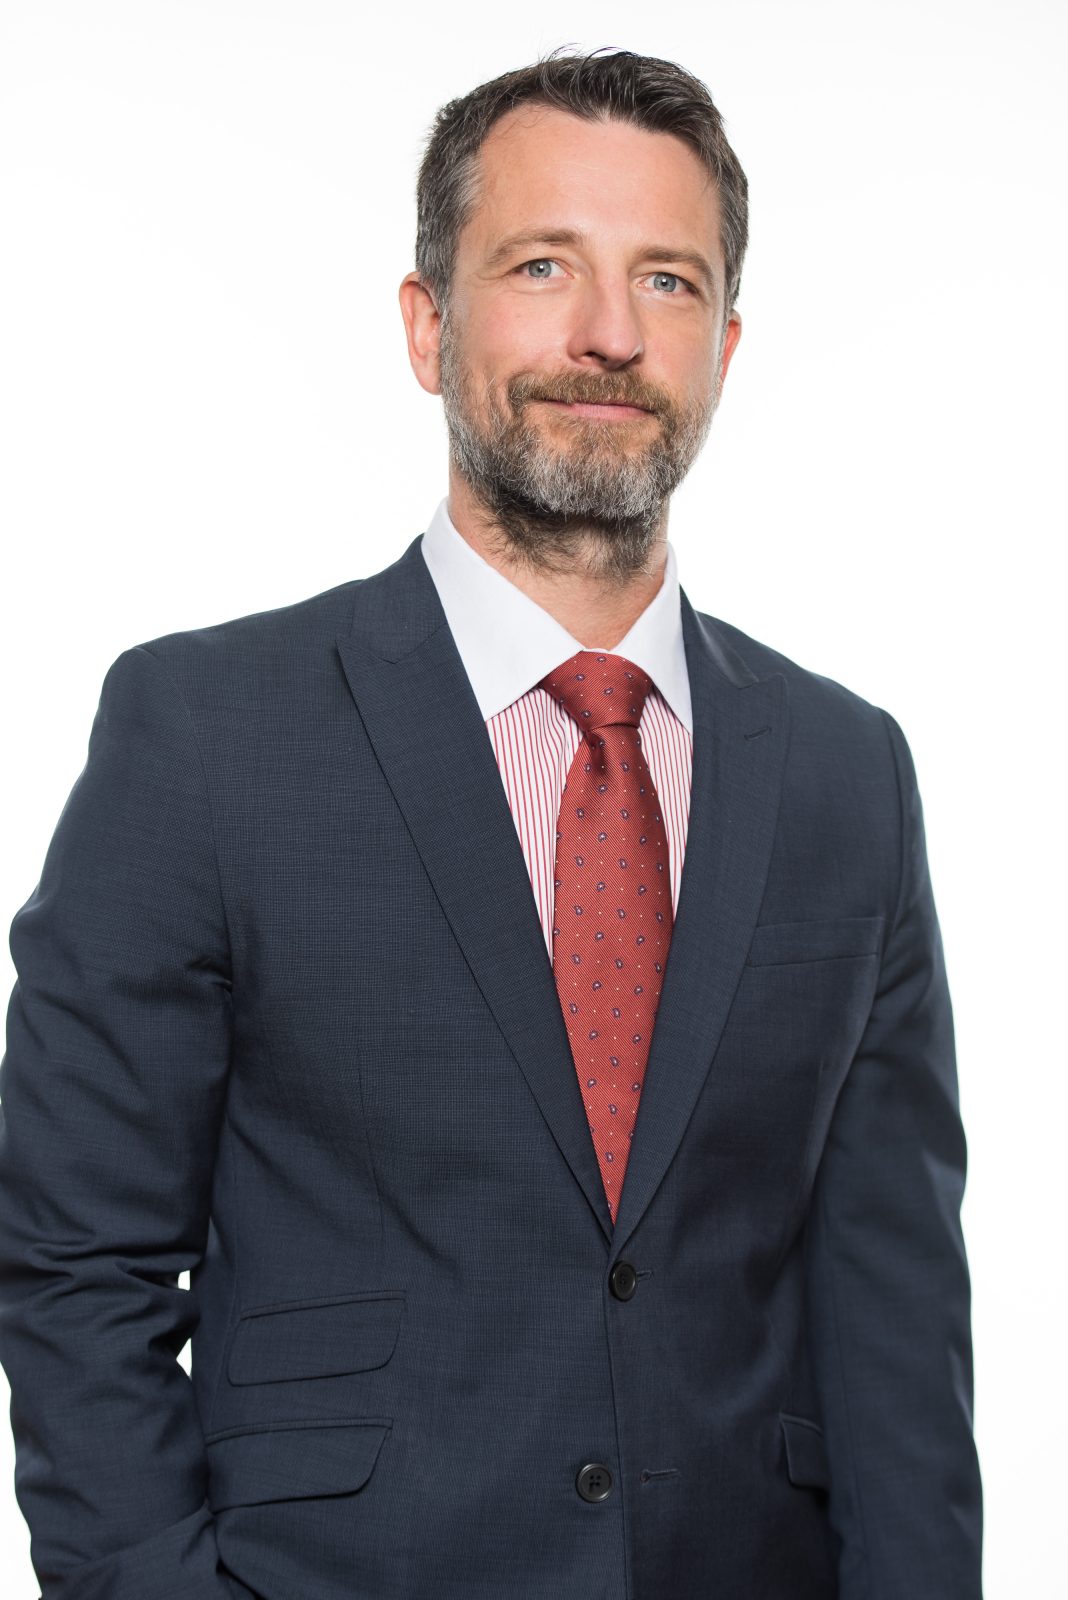 Serge Bernier devient vice-président du Barreau du Québec